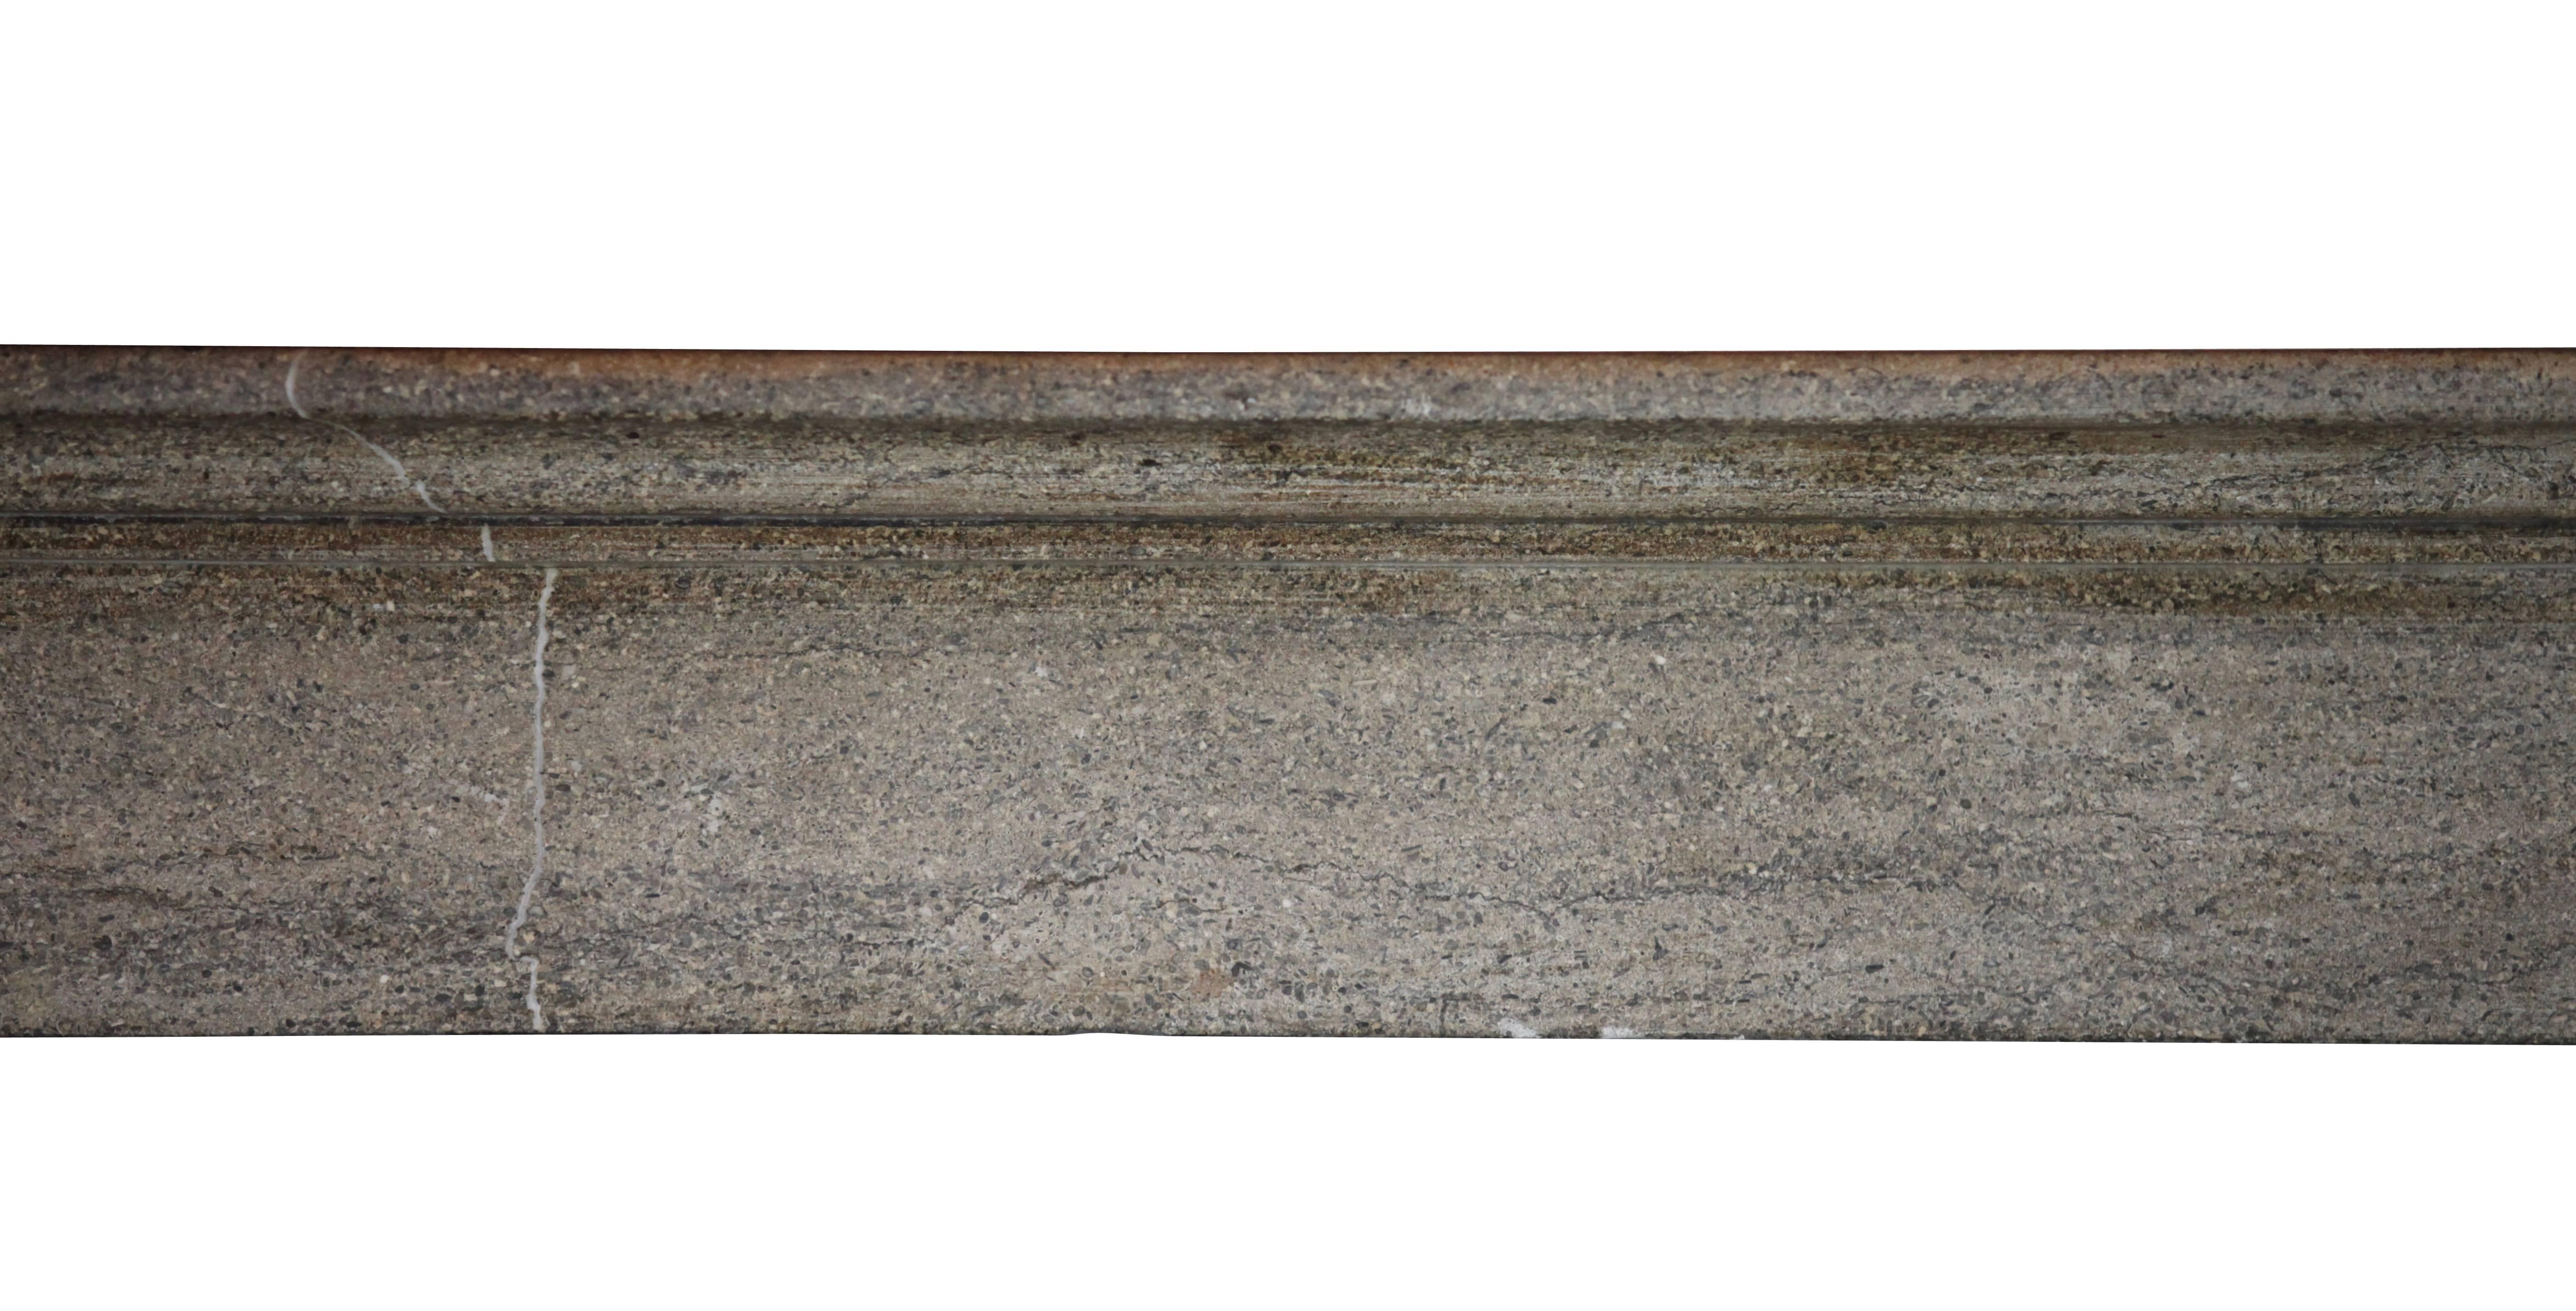 Sehr einzigartig und fein hohe Burgunder harten Stein graue Farbe antiken Kamin umgeben.
Periode Louis Philippe. 

Maßnahmen;
161 cm EW 63.38